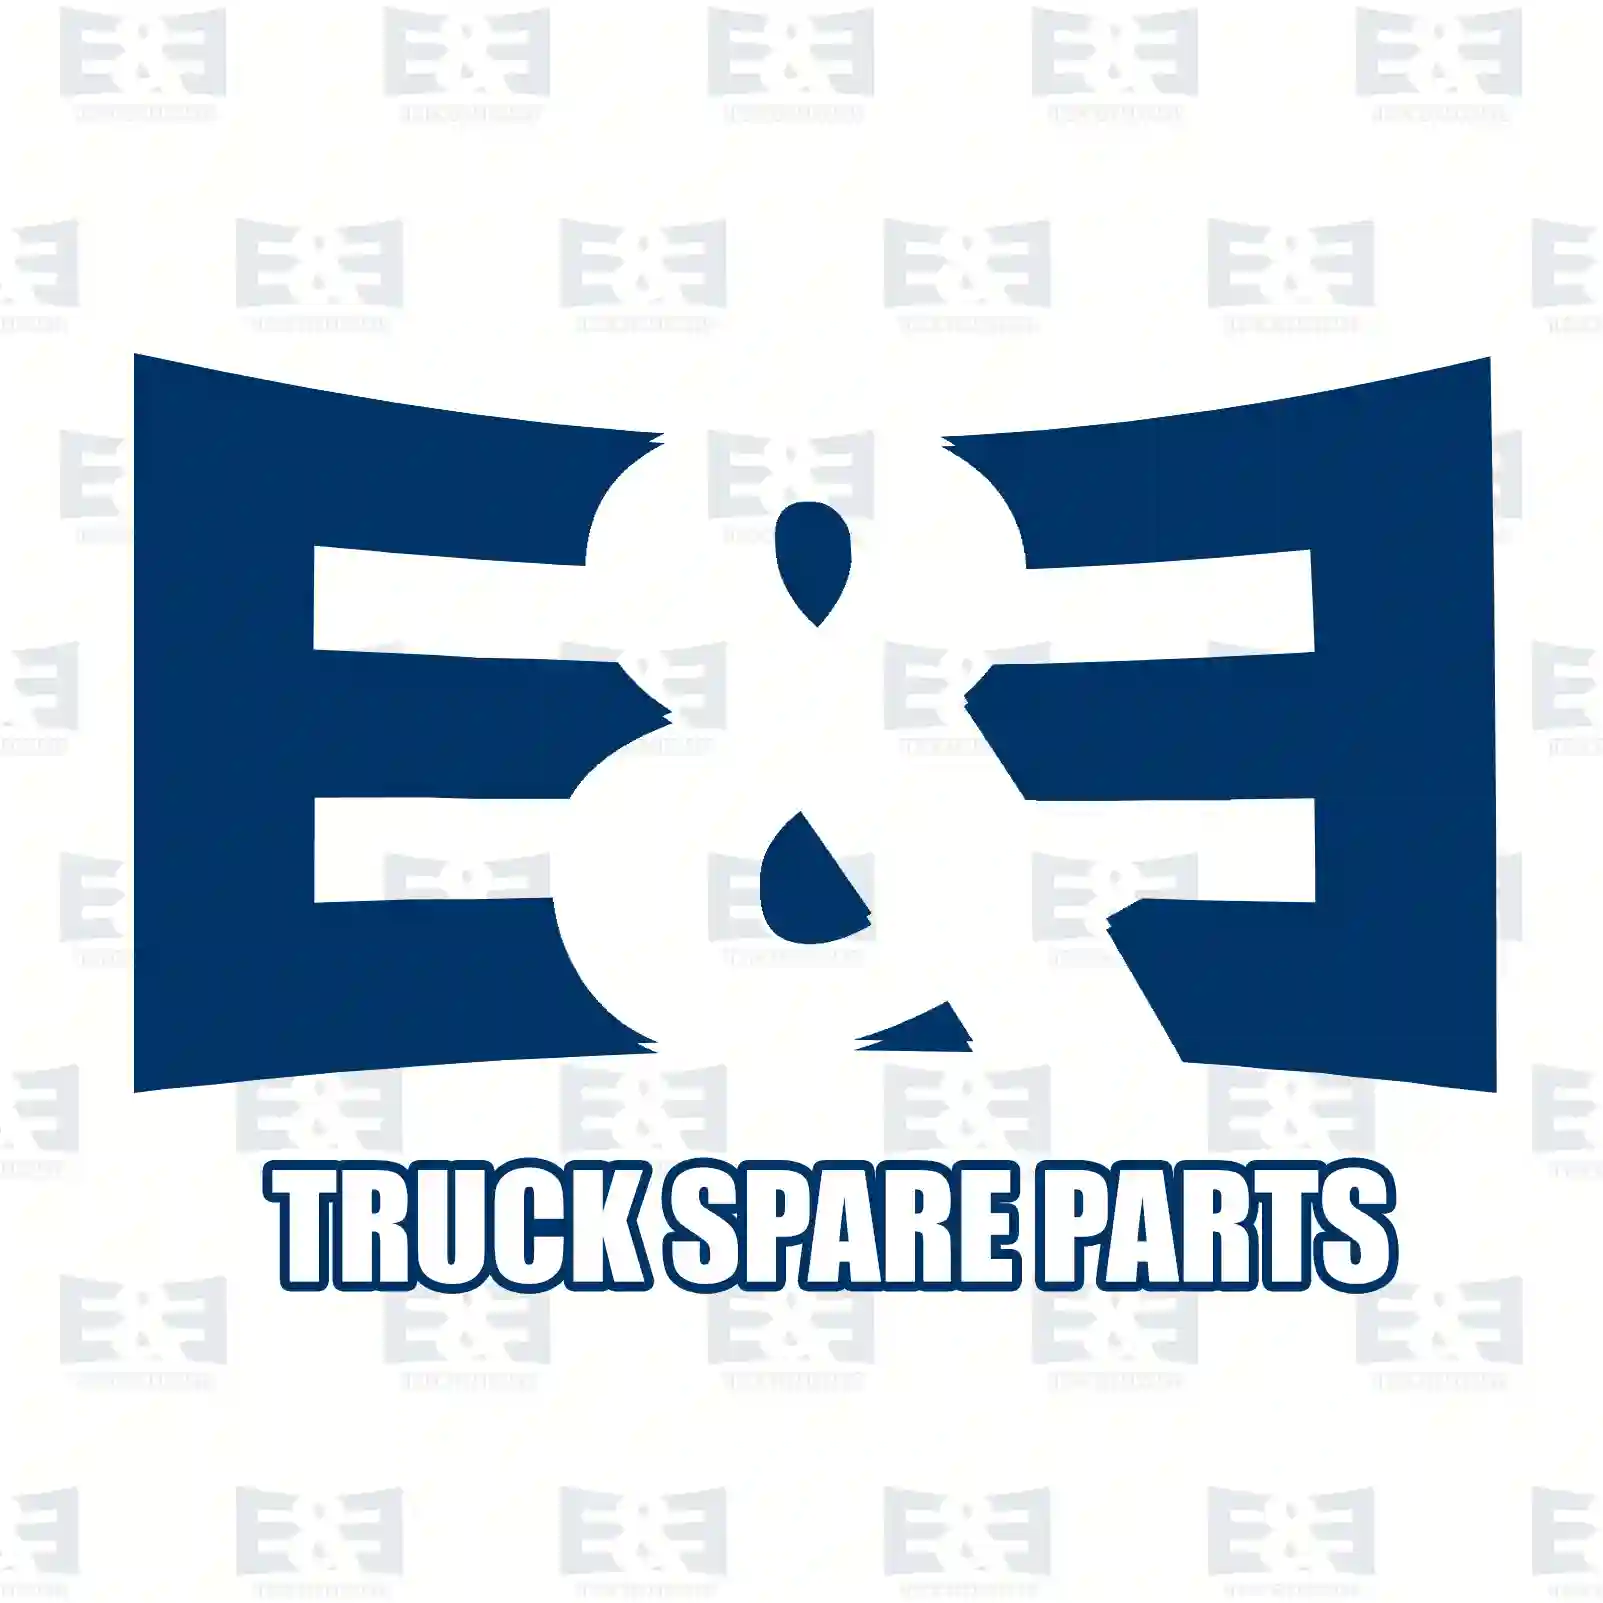 Lock washer, 2E2284272, 1327413, 287449, ZG30071-0008 ||  2E2284272 E&E Truck Spare Parts | Truck Spare Parts, Auotomotive Spare Parts Lock washer, 2E2284272, 1327413, 287449, ZG30071-0008 ||  2E2284272 E&E Truck Spare Parts | Truck Spare Parts, Auotomotive Spare Parts